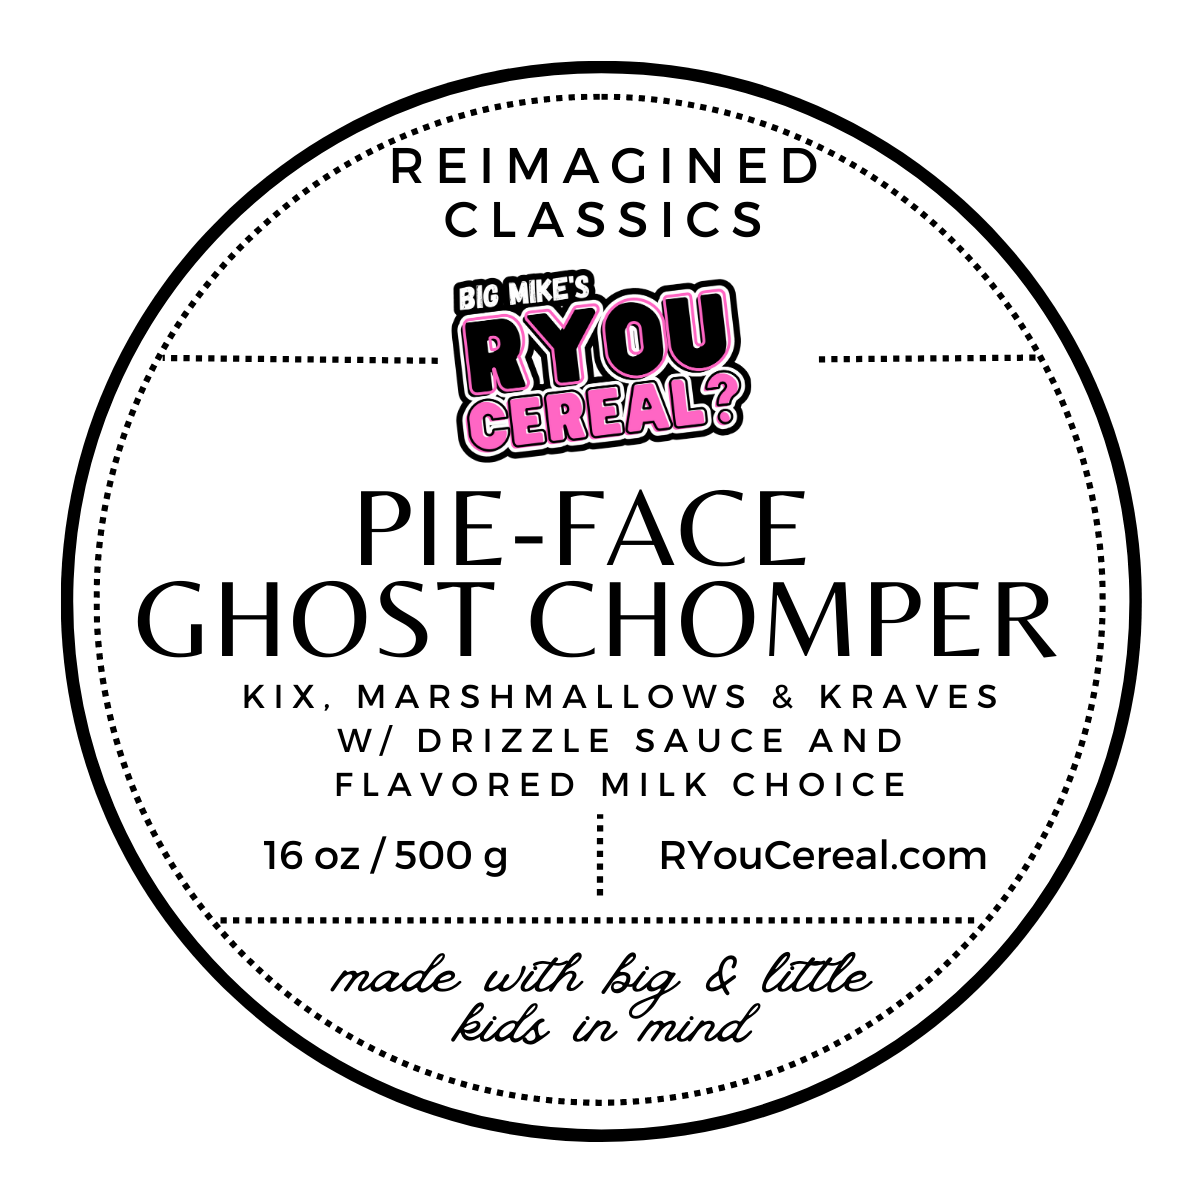 Pie-Face Ghost Chomper